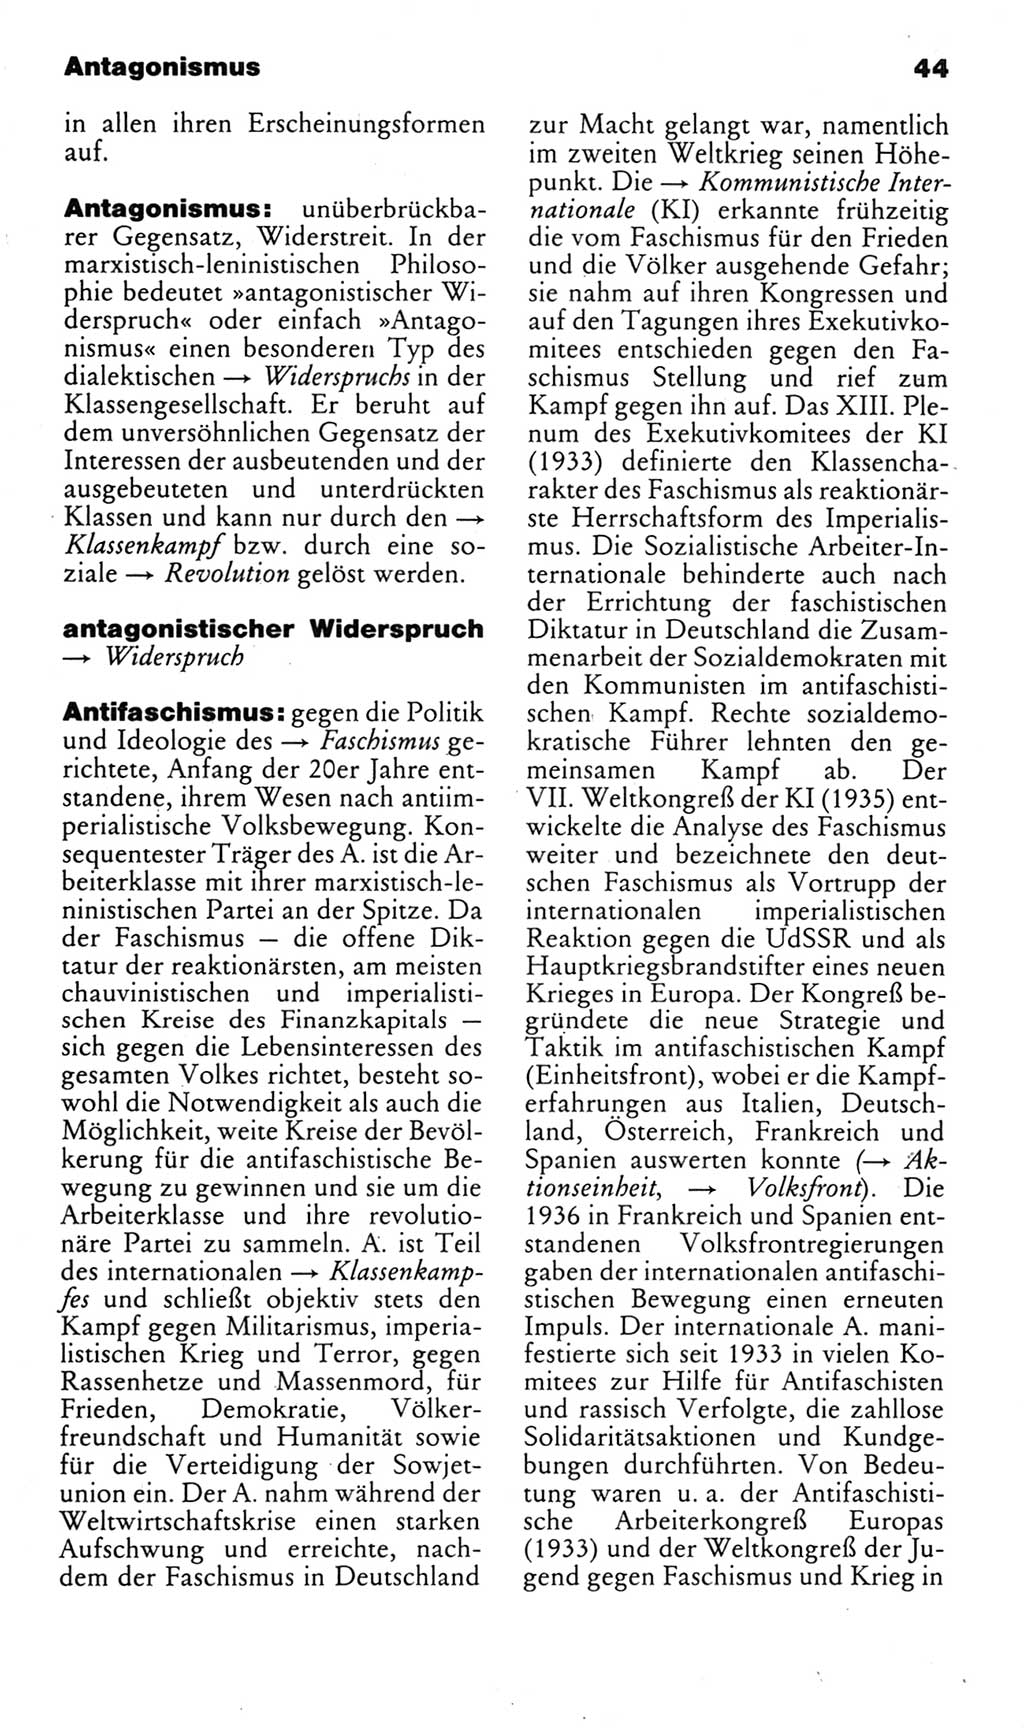 Kleines politisches Wörterbuch [Deutsche Demokratische Republik (DDR)] 1983, Seite 44 (Kl. pol. Wb. DDR 1983, S. 44)